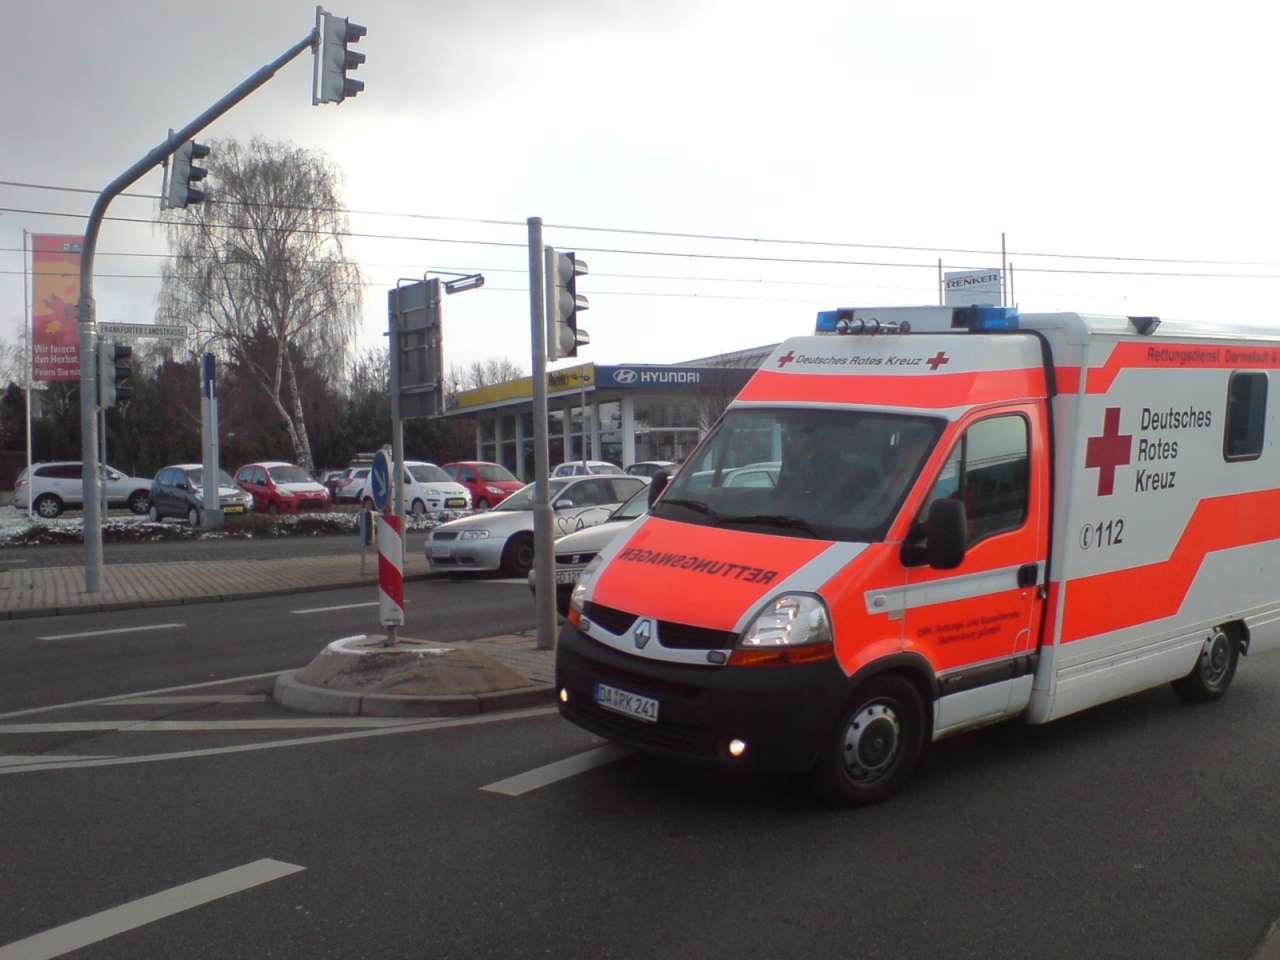 Автомобиль полиции, направляющийся к месту крушения самолета в Германии, попал в ДТП